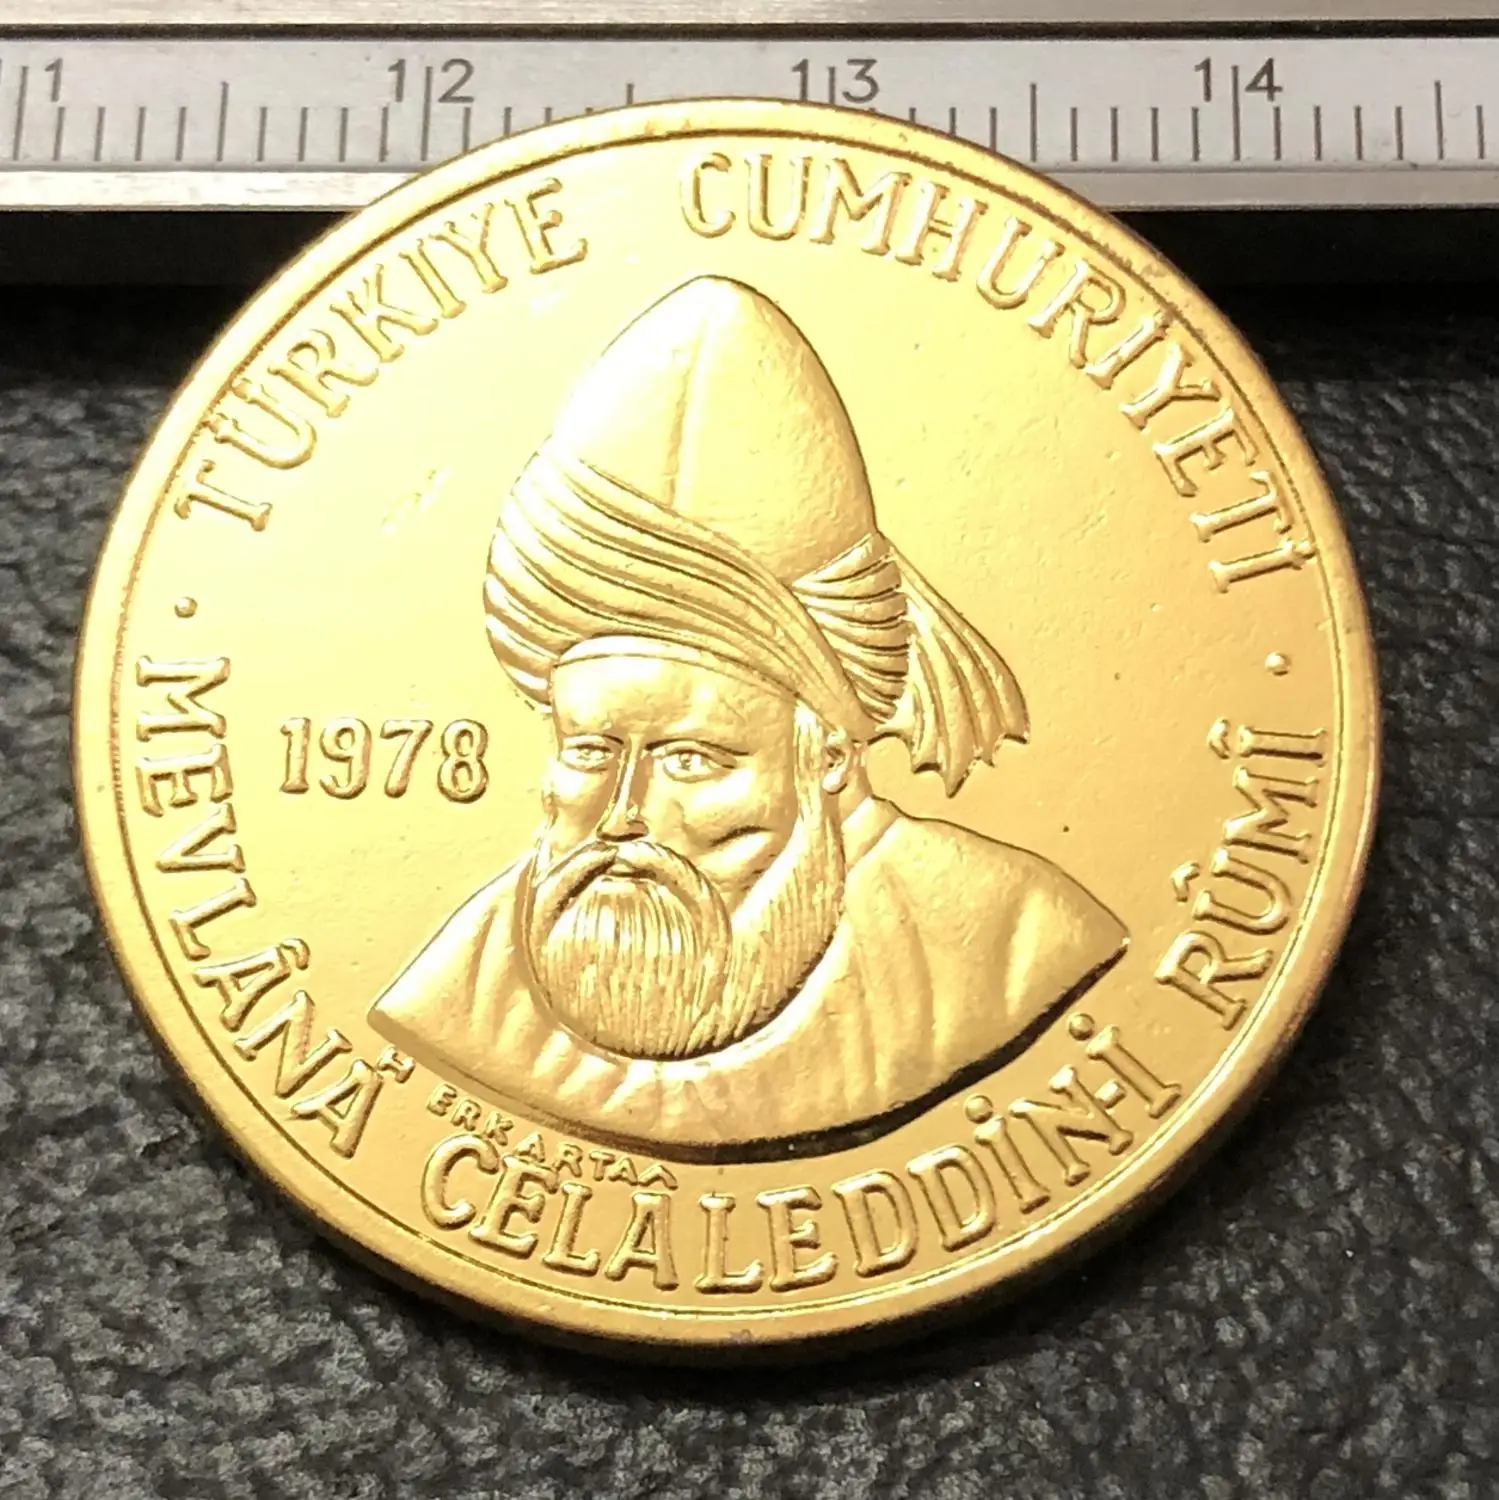 1978 Турция 1000 Лира джалаладдин Руми Золотая копия монеты